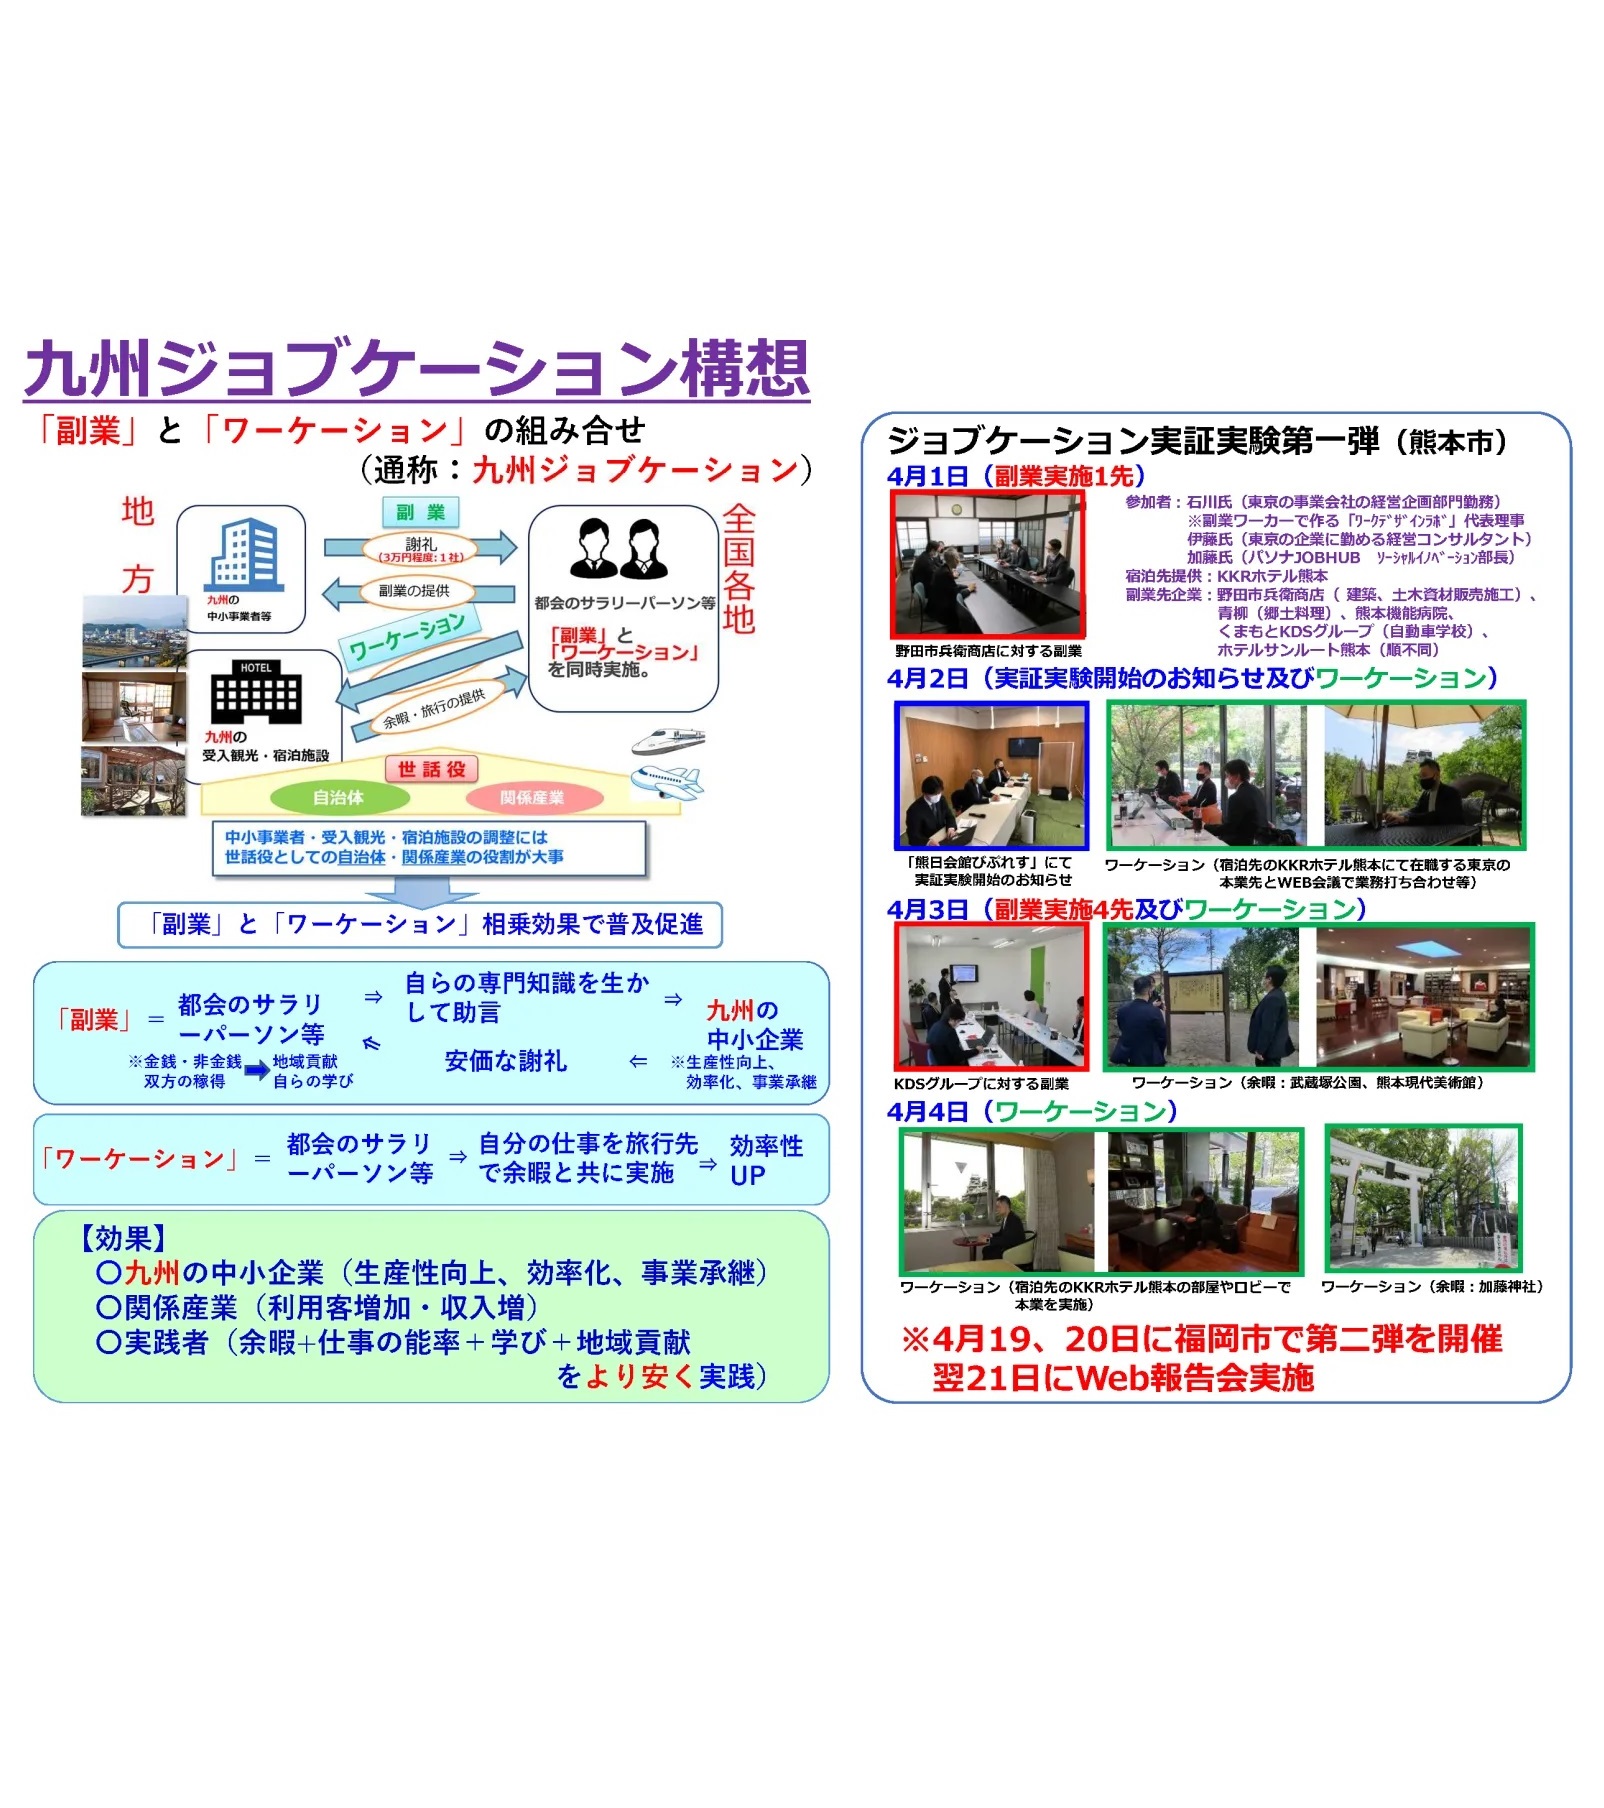 未来を作るオンラインメディア『ソトコト』に代表の石川が参加した九州ジョブケーション実証実験が掲載されました。